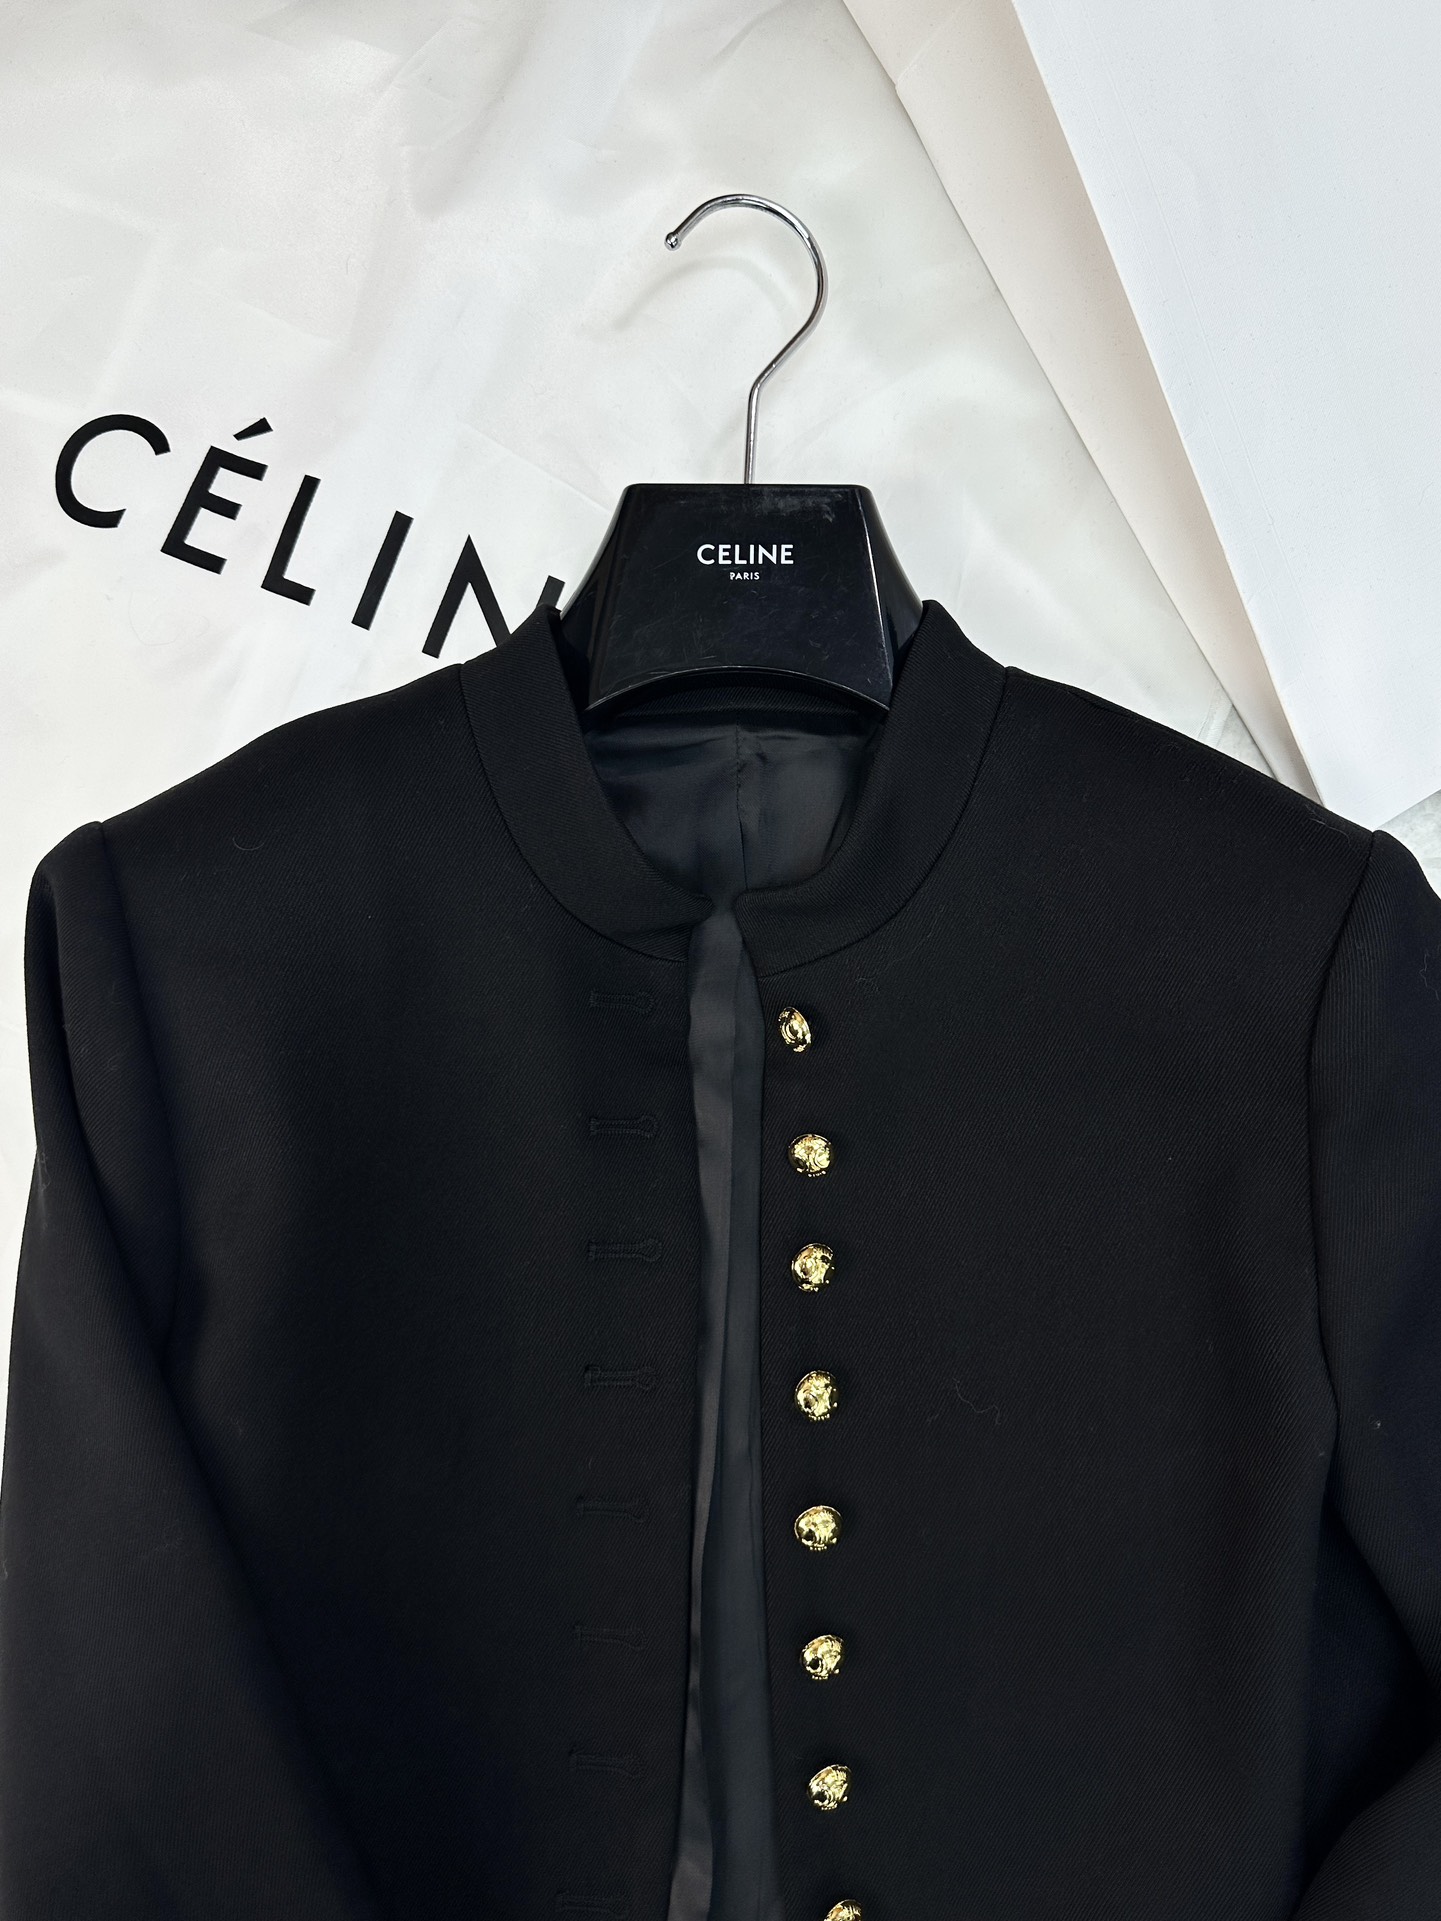 激安大特価最新作の セリーヌツイードジャケットコピー 暖かい トップス アウター ファッション 高級品 ブラック_3